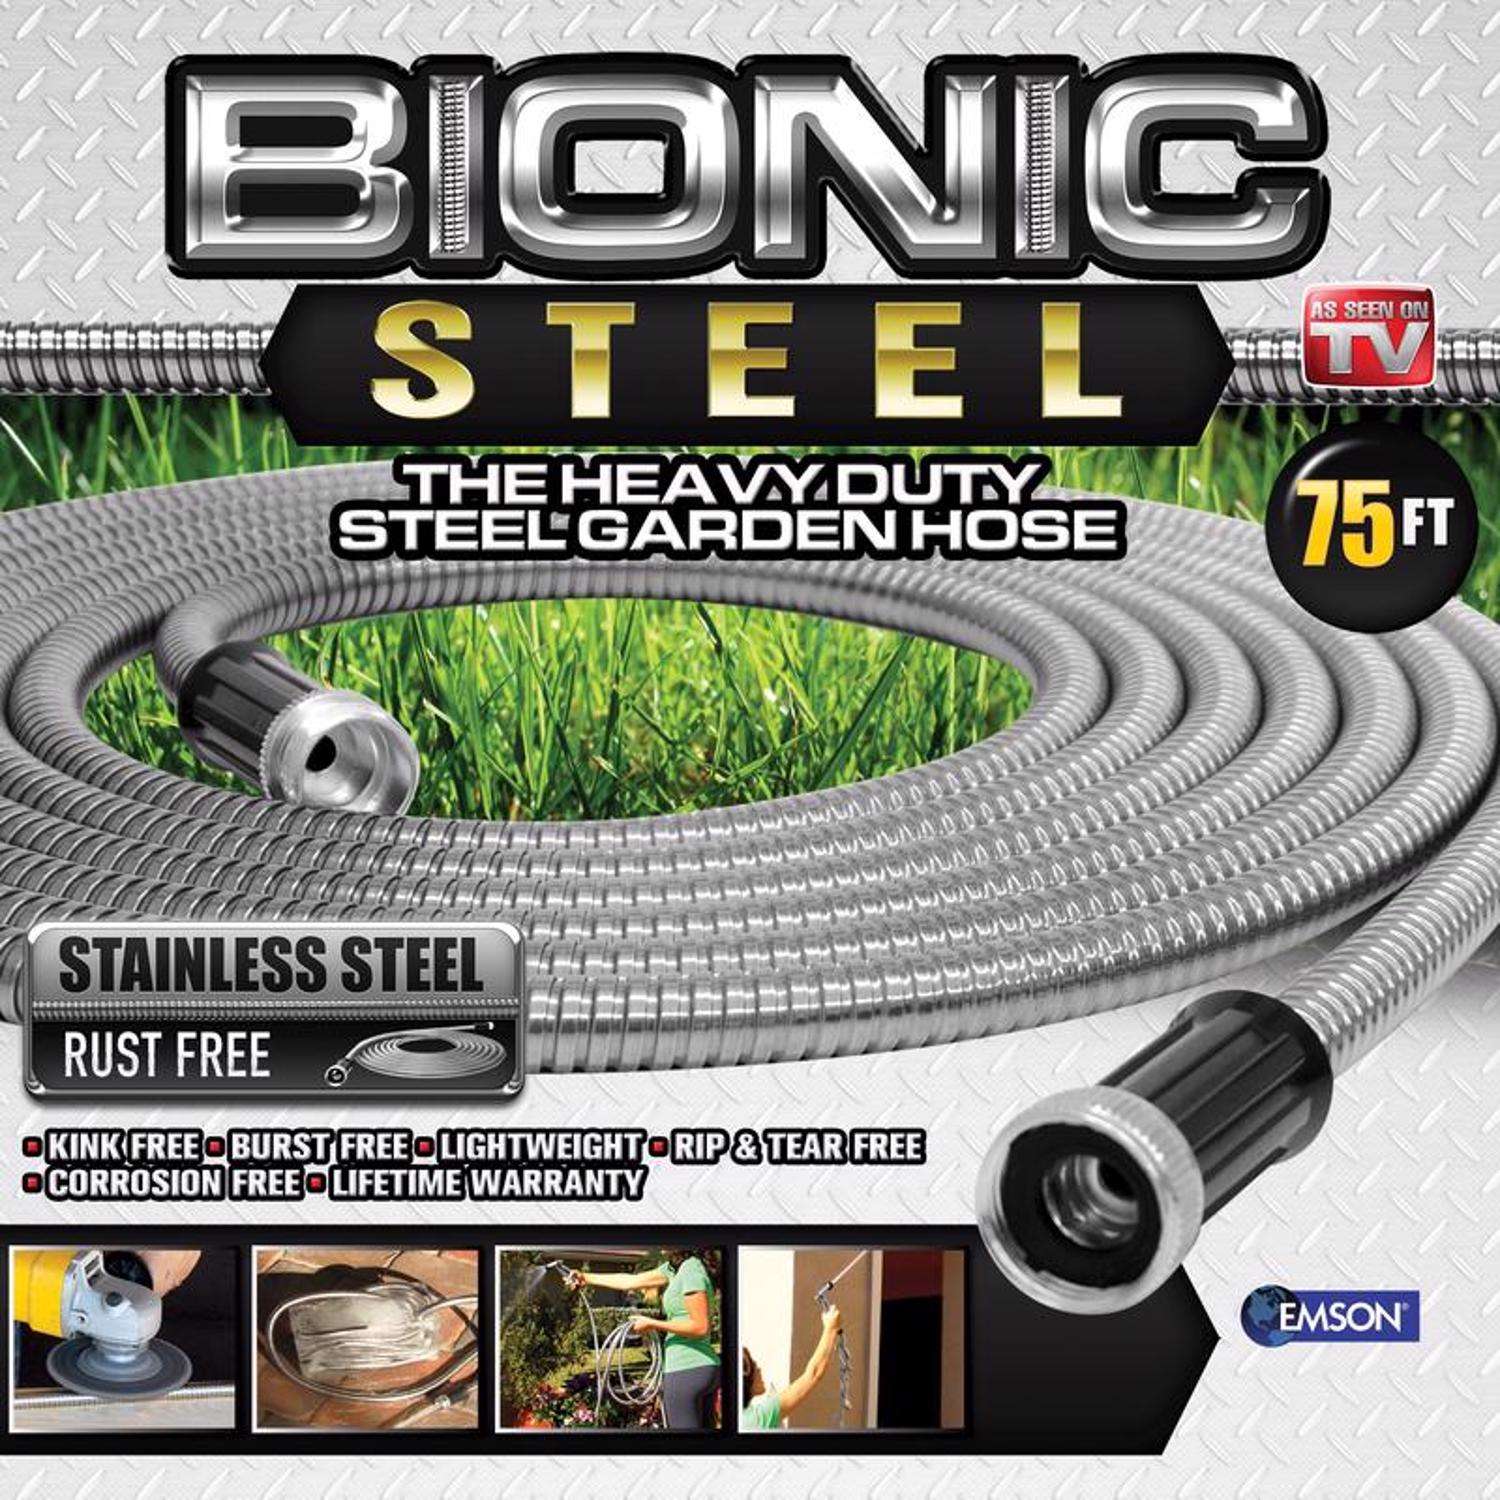 Bionic Steel 5/8 in. x 75 ft. Pro Heavy-Duty Stainless Steel Garden Hose, Silver